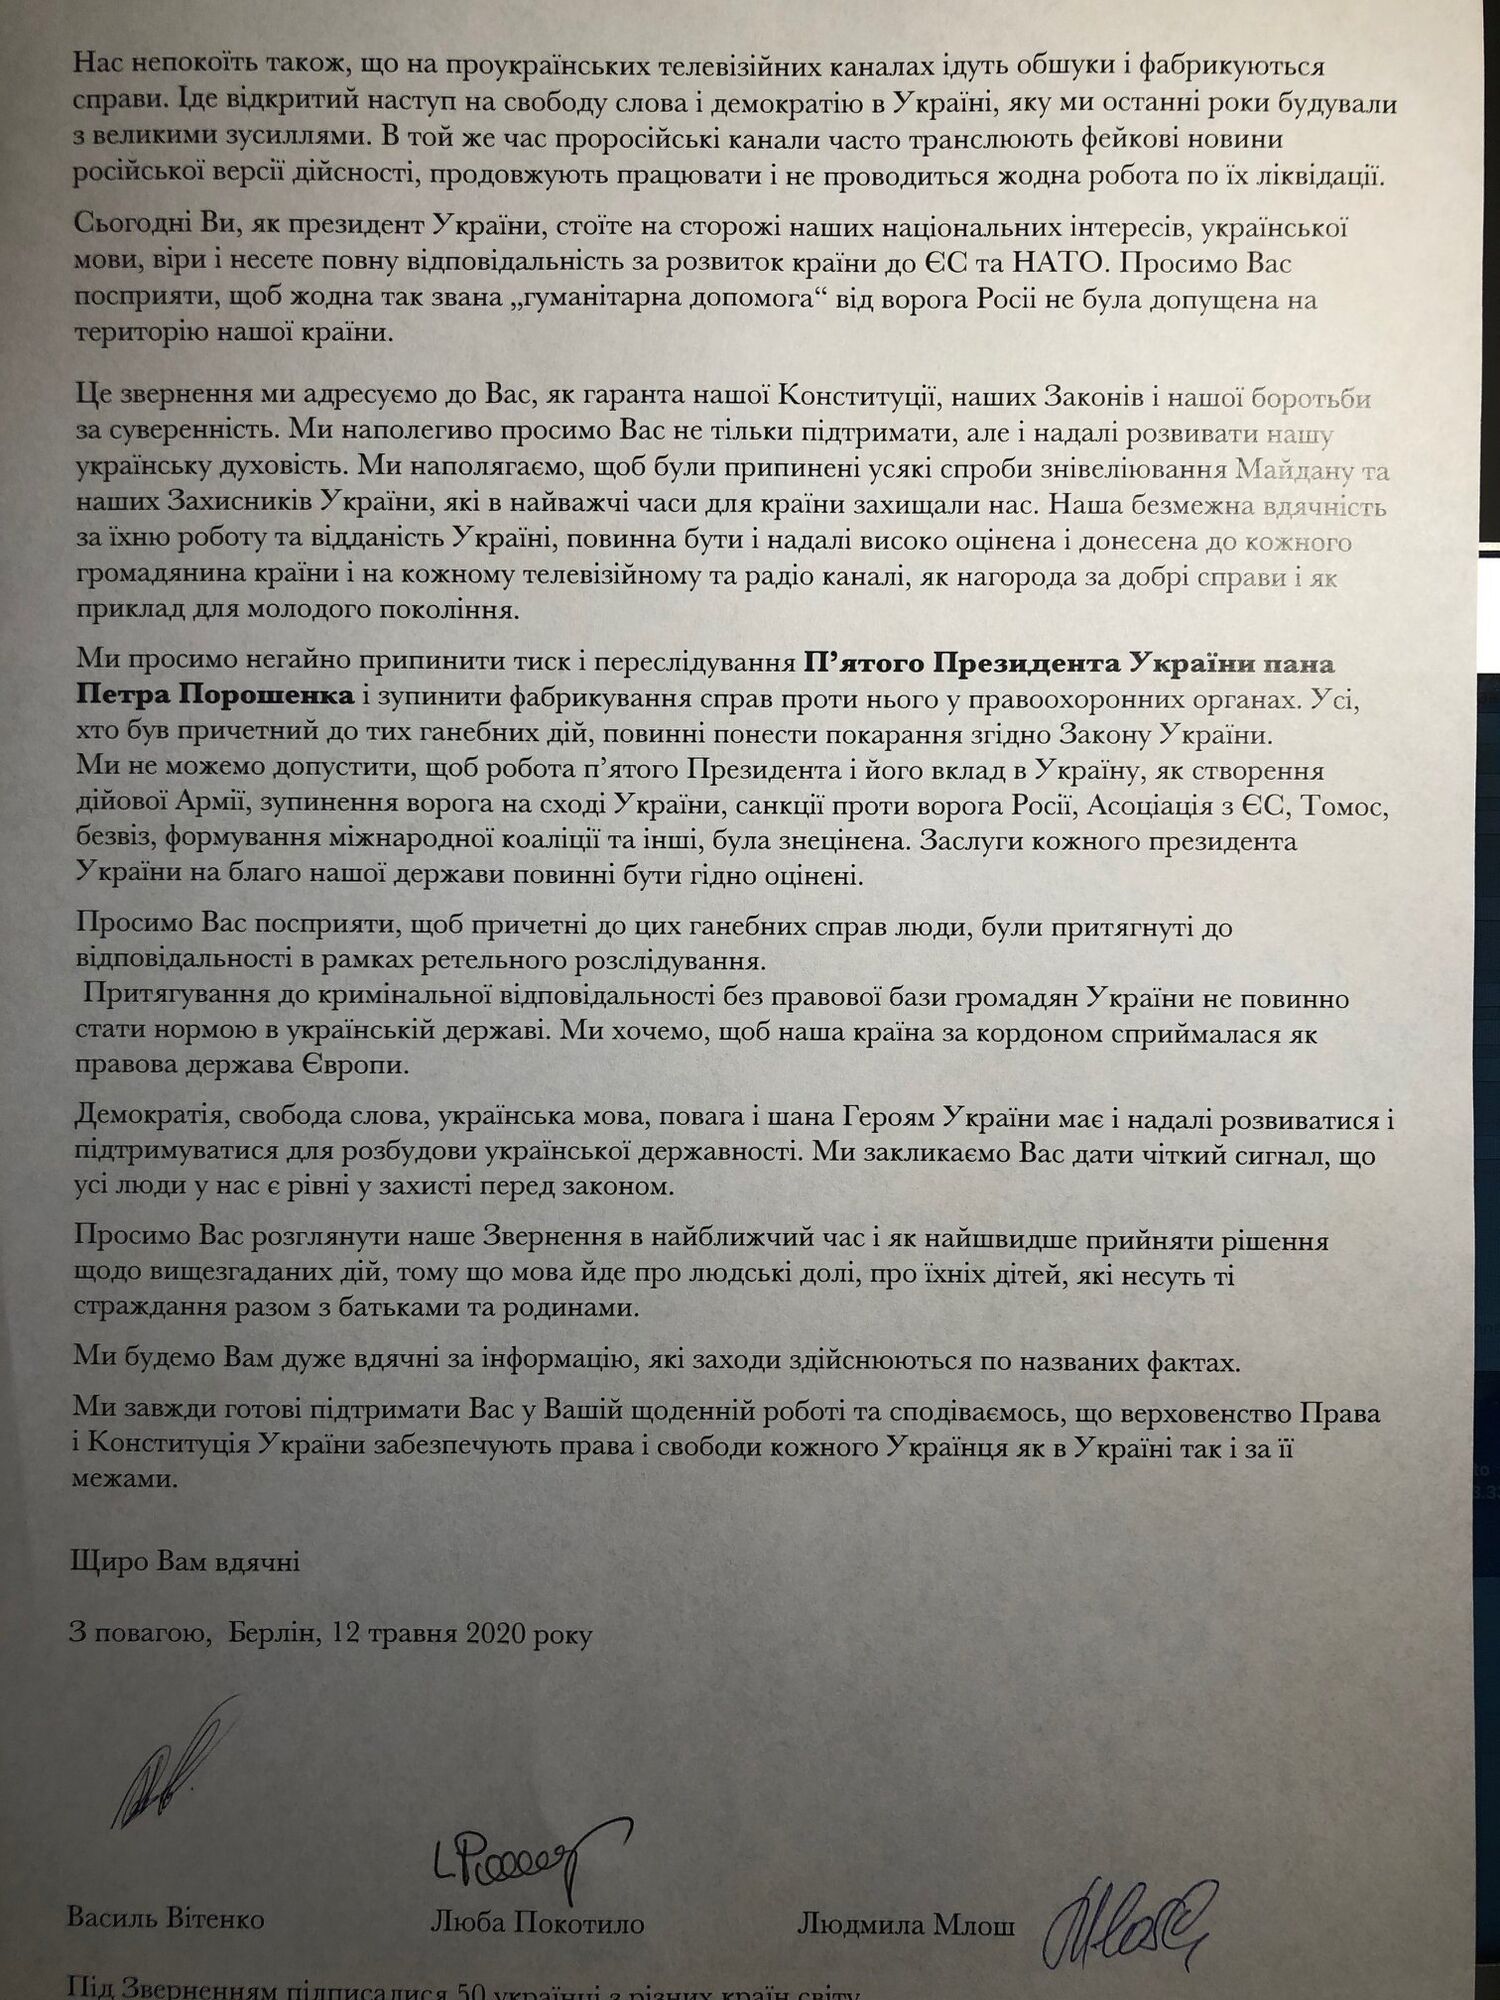 Диаспора призвала власть прекратить преследование Порошенко, Федины и Вятровича